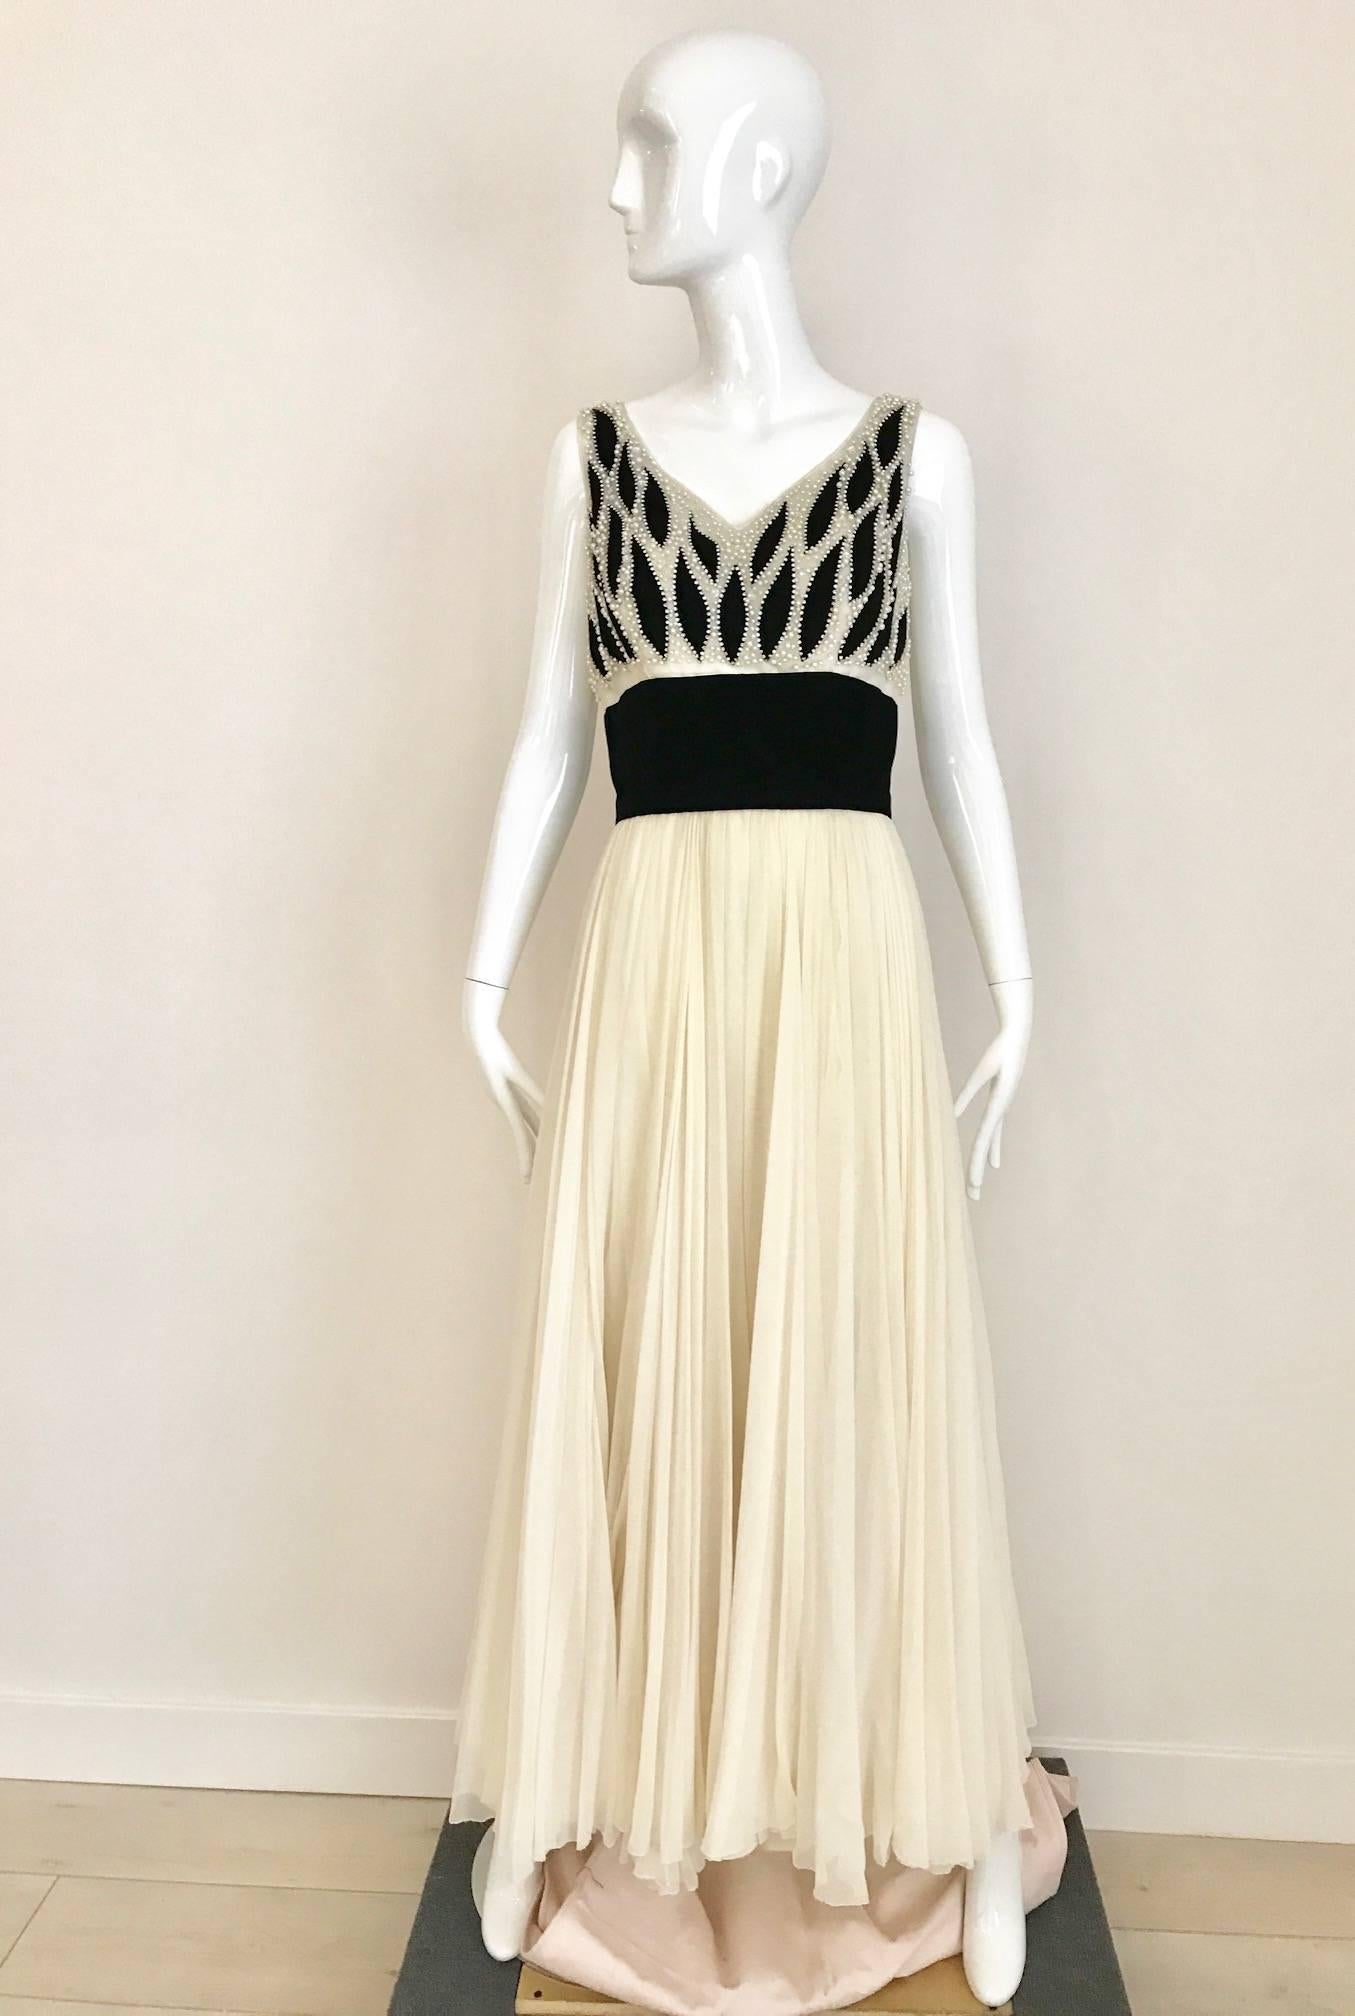 Cette robe de cocktail vintage Phillip Hulitar des années 1950, en mousseline de soie ivoire et velours noir, est la robe de soirée parfaite ou idéale pour un mariage. La robe a un corsage complexe en velours noir et en mousseline de soie ivoire,